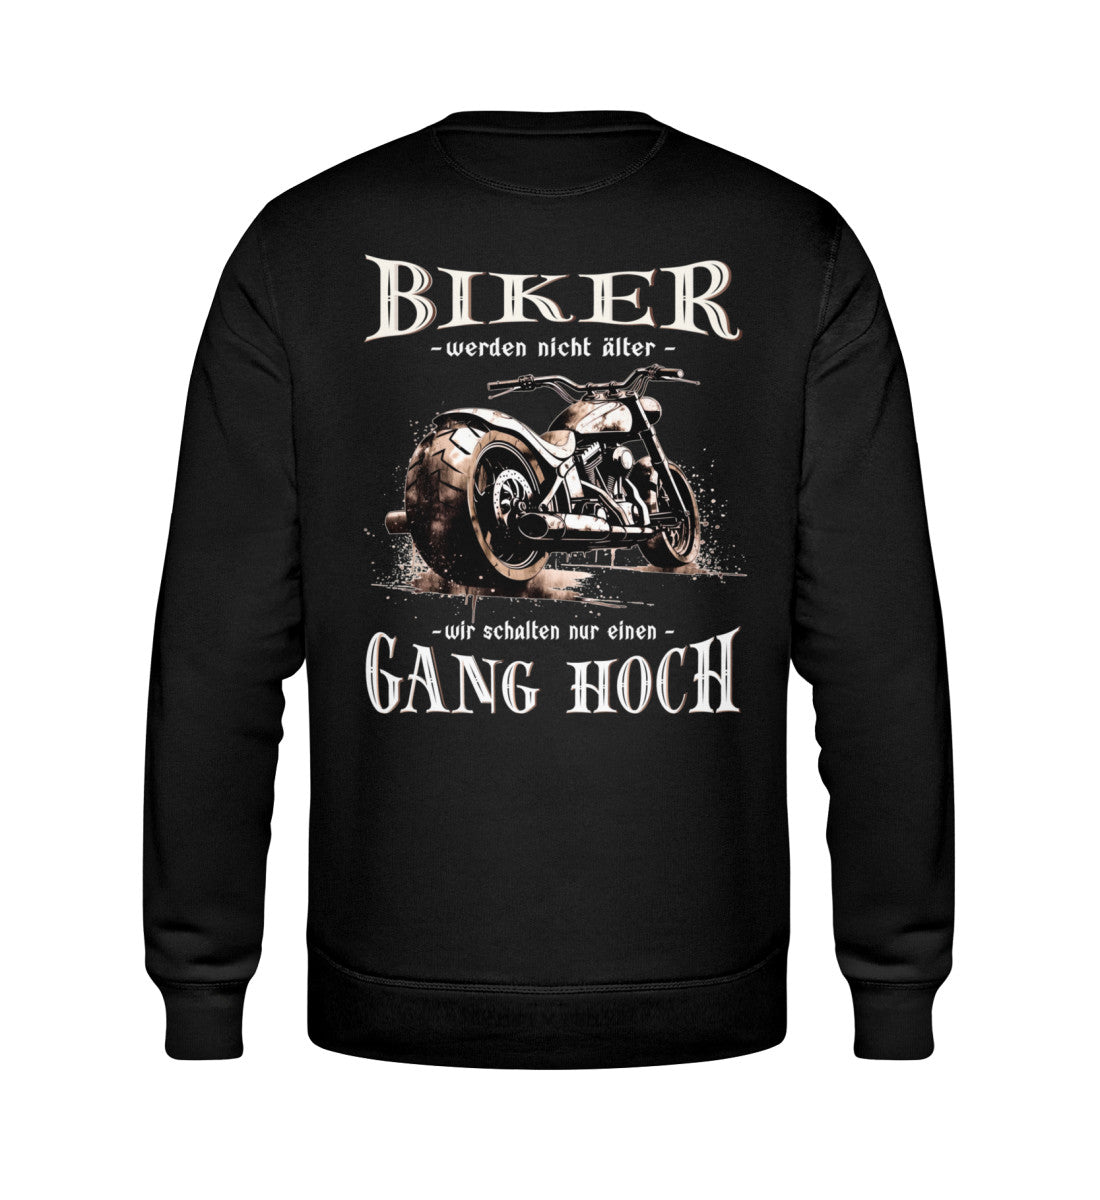 Ein Biker Sweatshirt für Motorradfahrer von Wingbikers mit dem Aufdruck, Biker werden nicht älter - Wir schalten nur einen Gang hoch! mit Back Print, in schwarz.